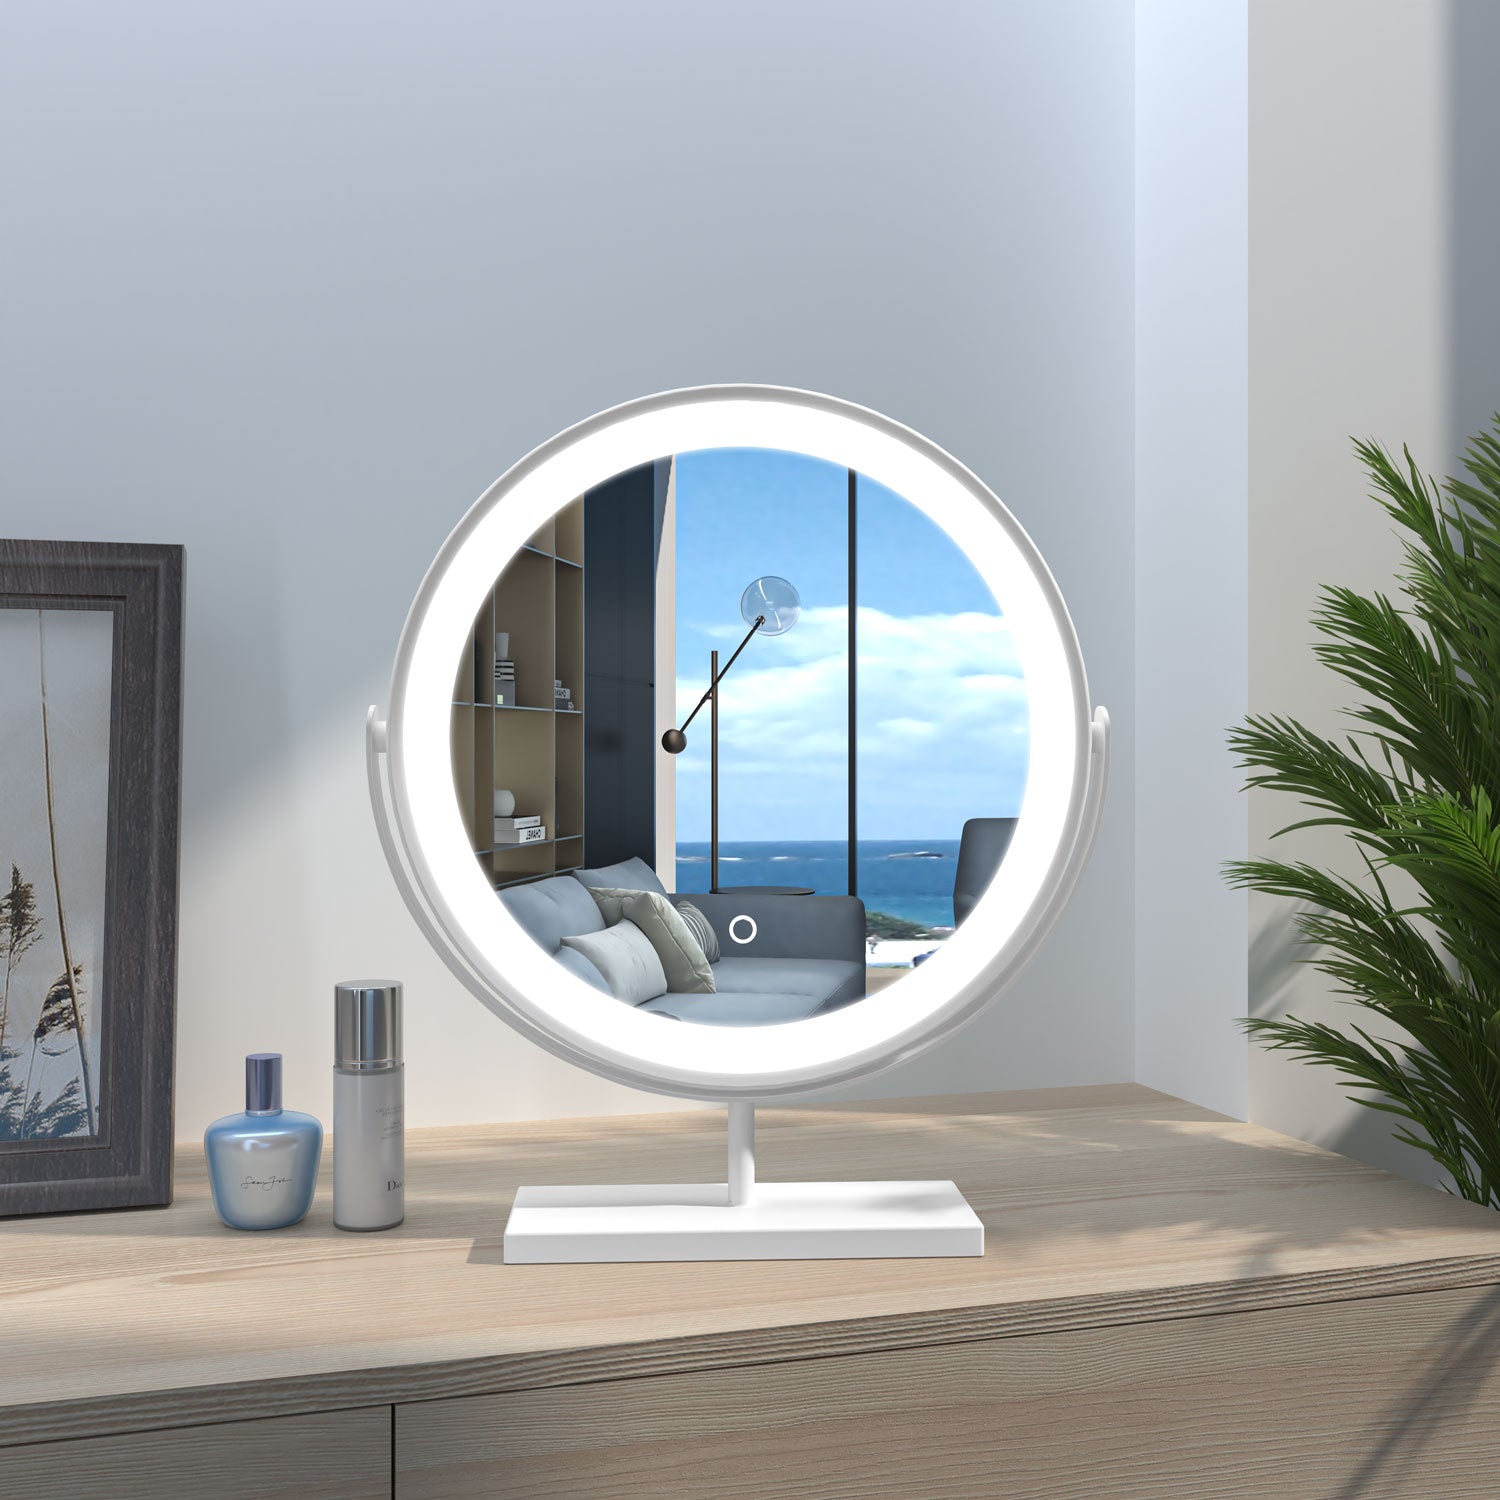 40x40cm Round LED Desktop Makeup Dressing Mirror 3 colors Metal Framed